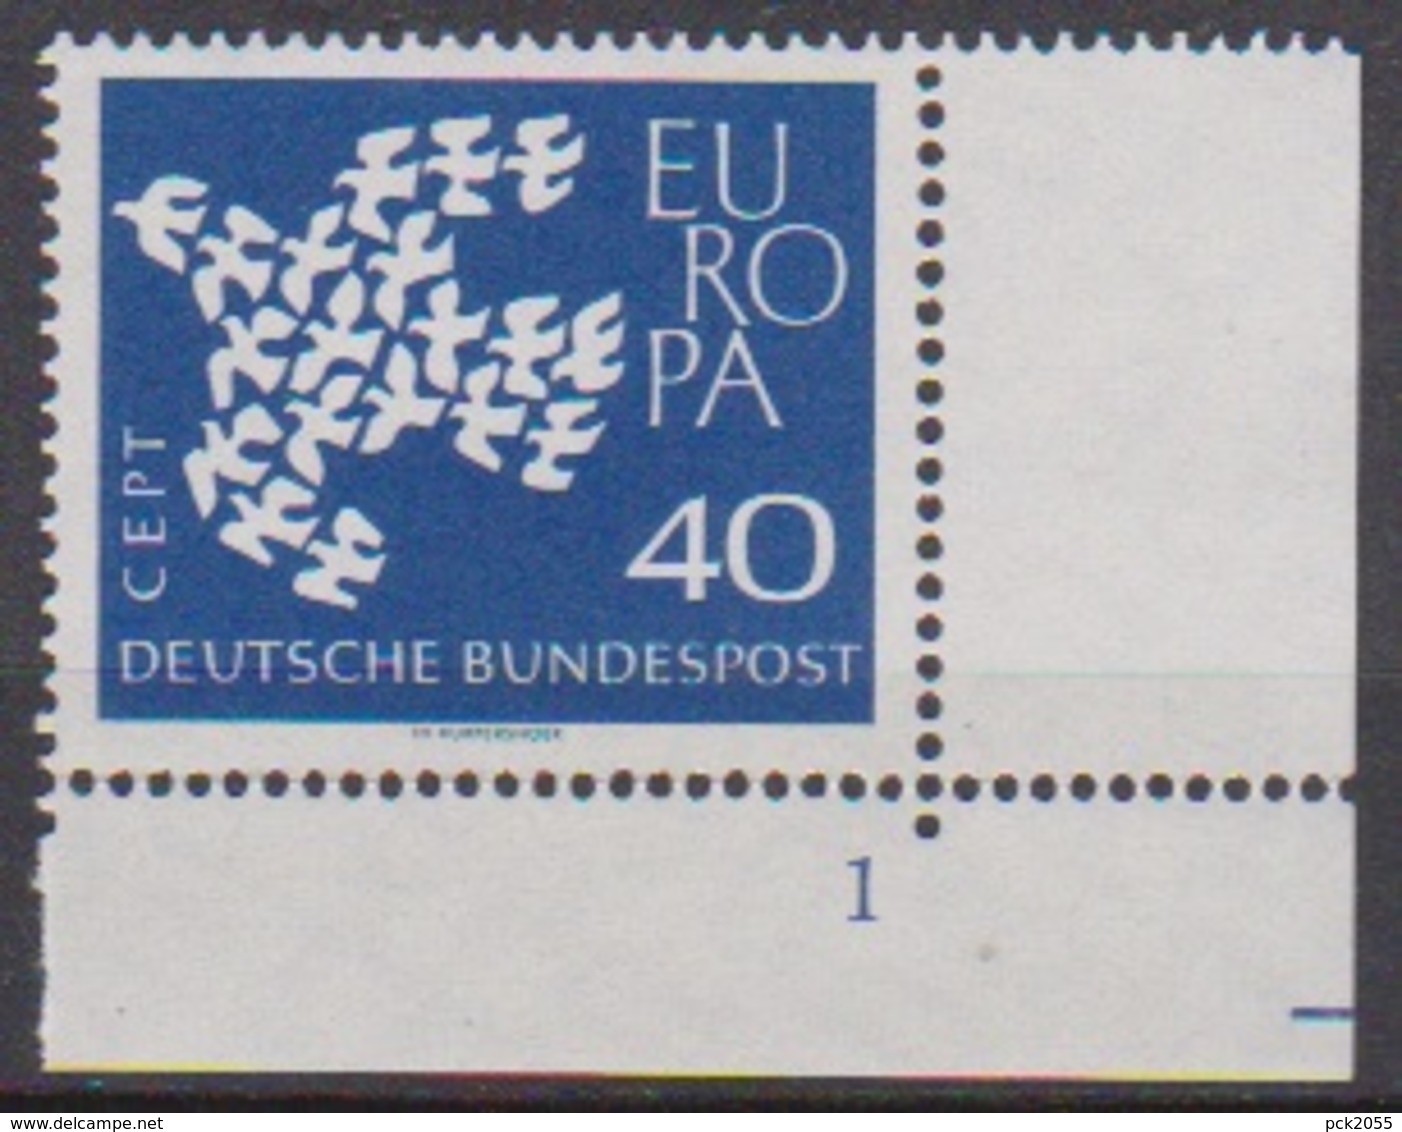 BRD 1961 MiNr. 368x Formnr.1** Postfr. EUROPA ( 6893 )günstige Versandkosten - Ungebraucht